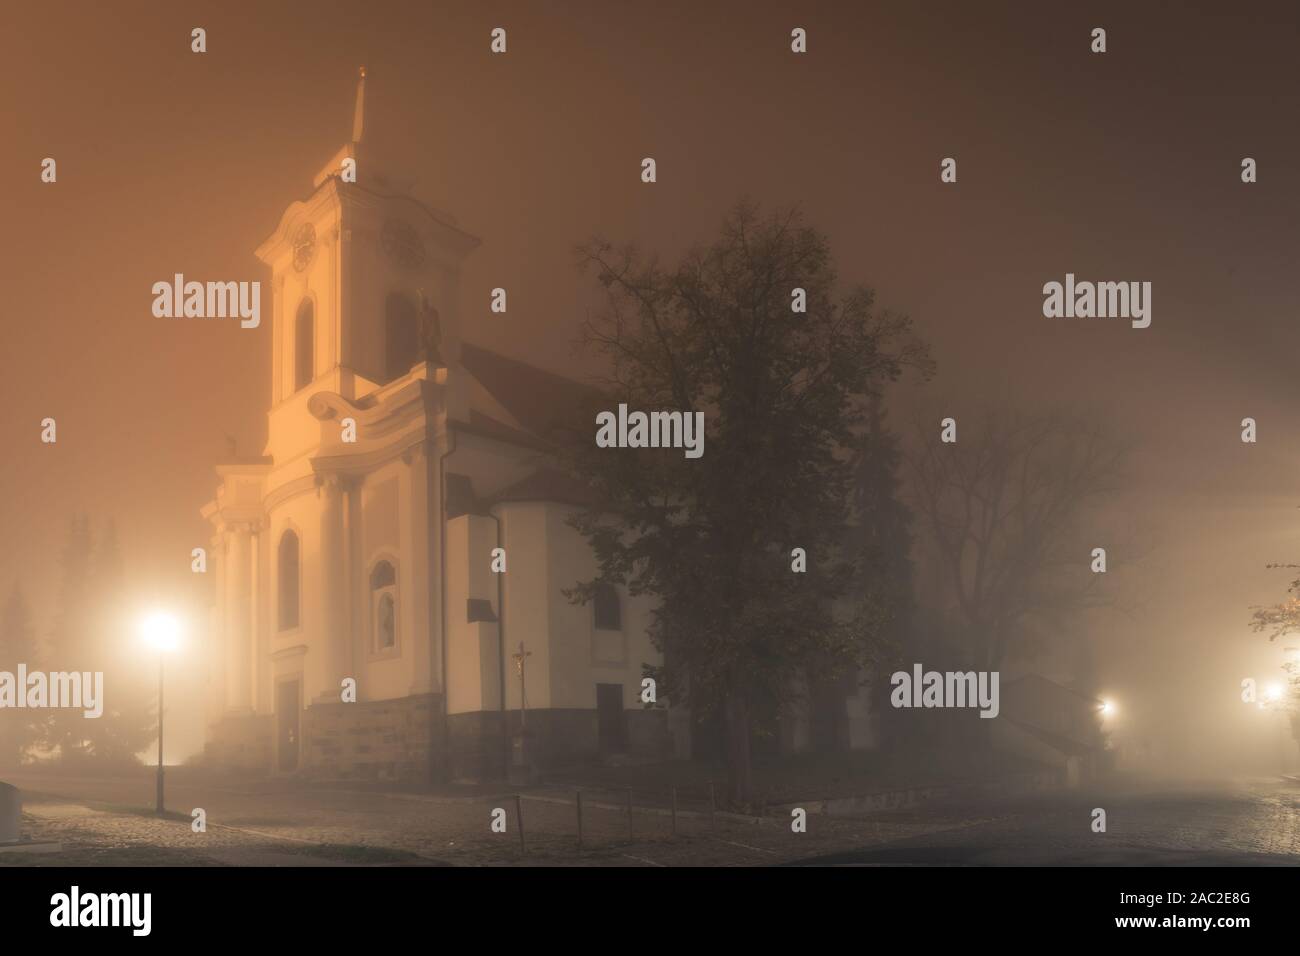 Alte Kirche in Nebel in der Nacht, St. Gotgard Kirche in Cesky Brod, Südböhmen Region Tschechische Republik. Spooky Herbst oder Winter Szene. Stockfoto